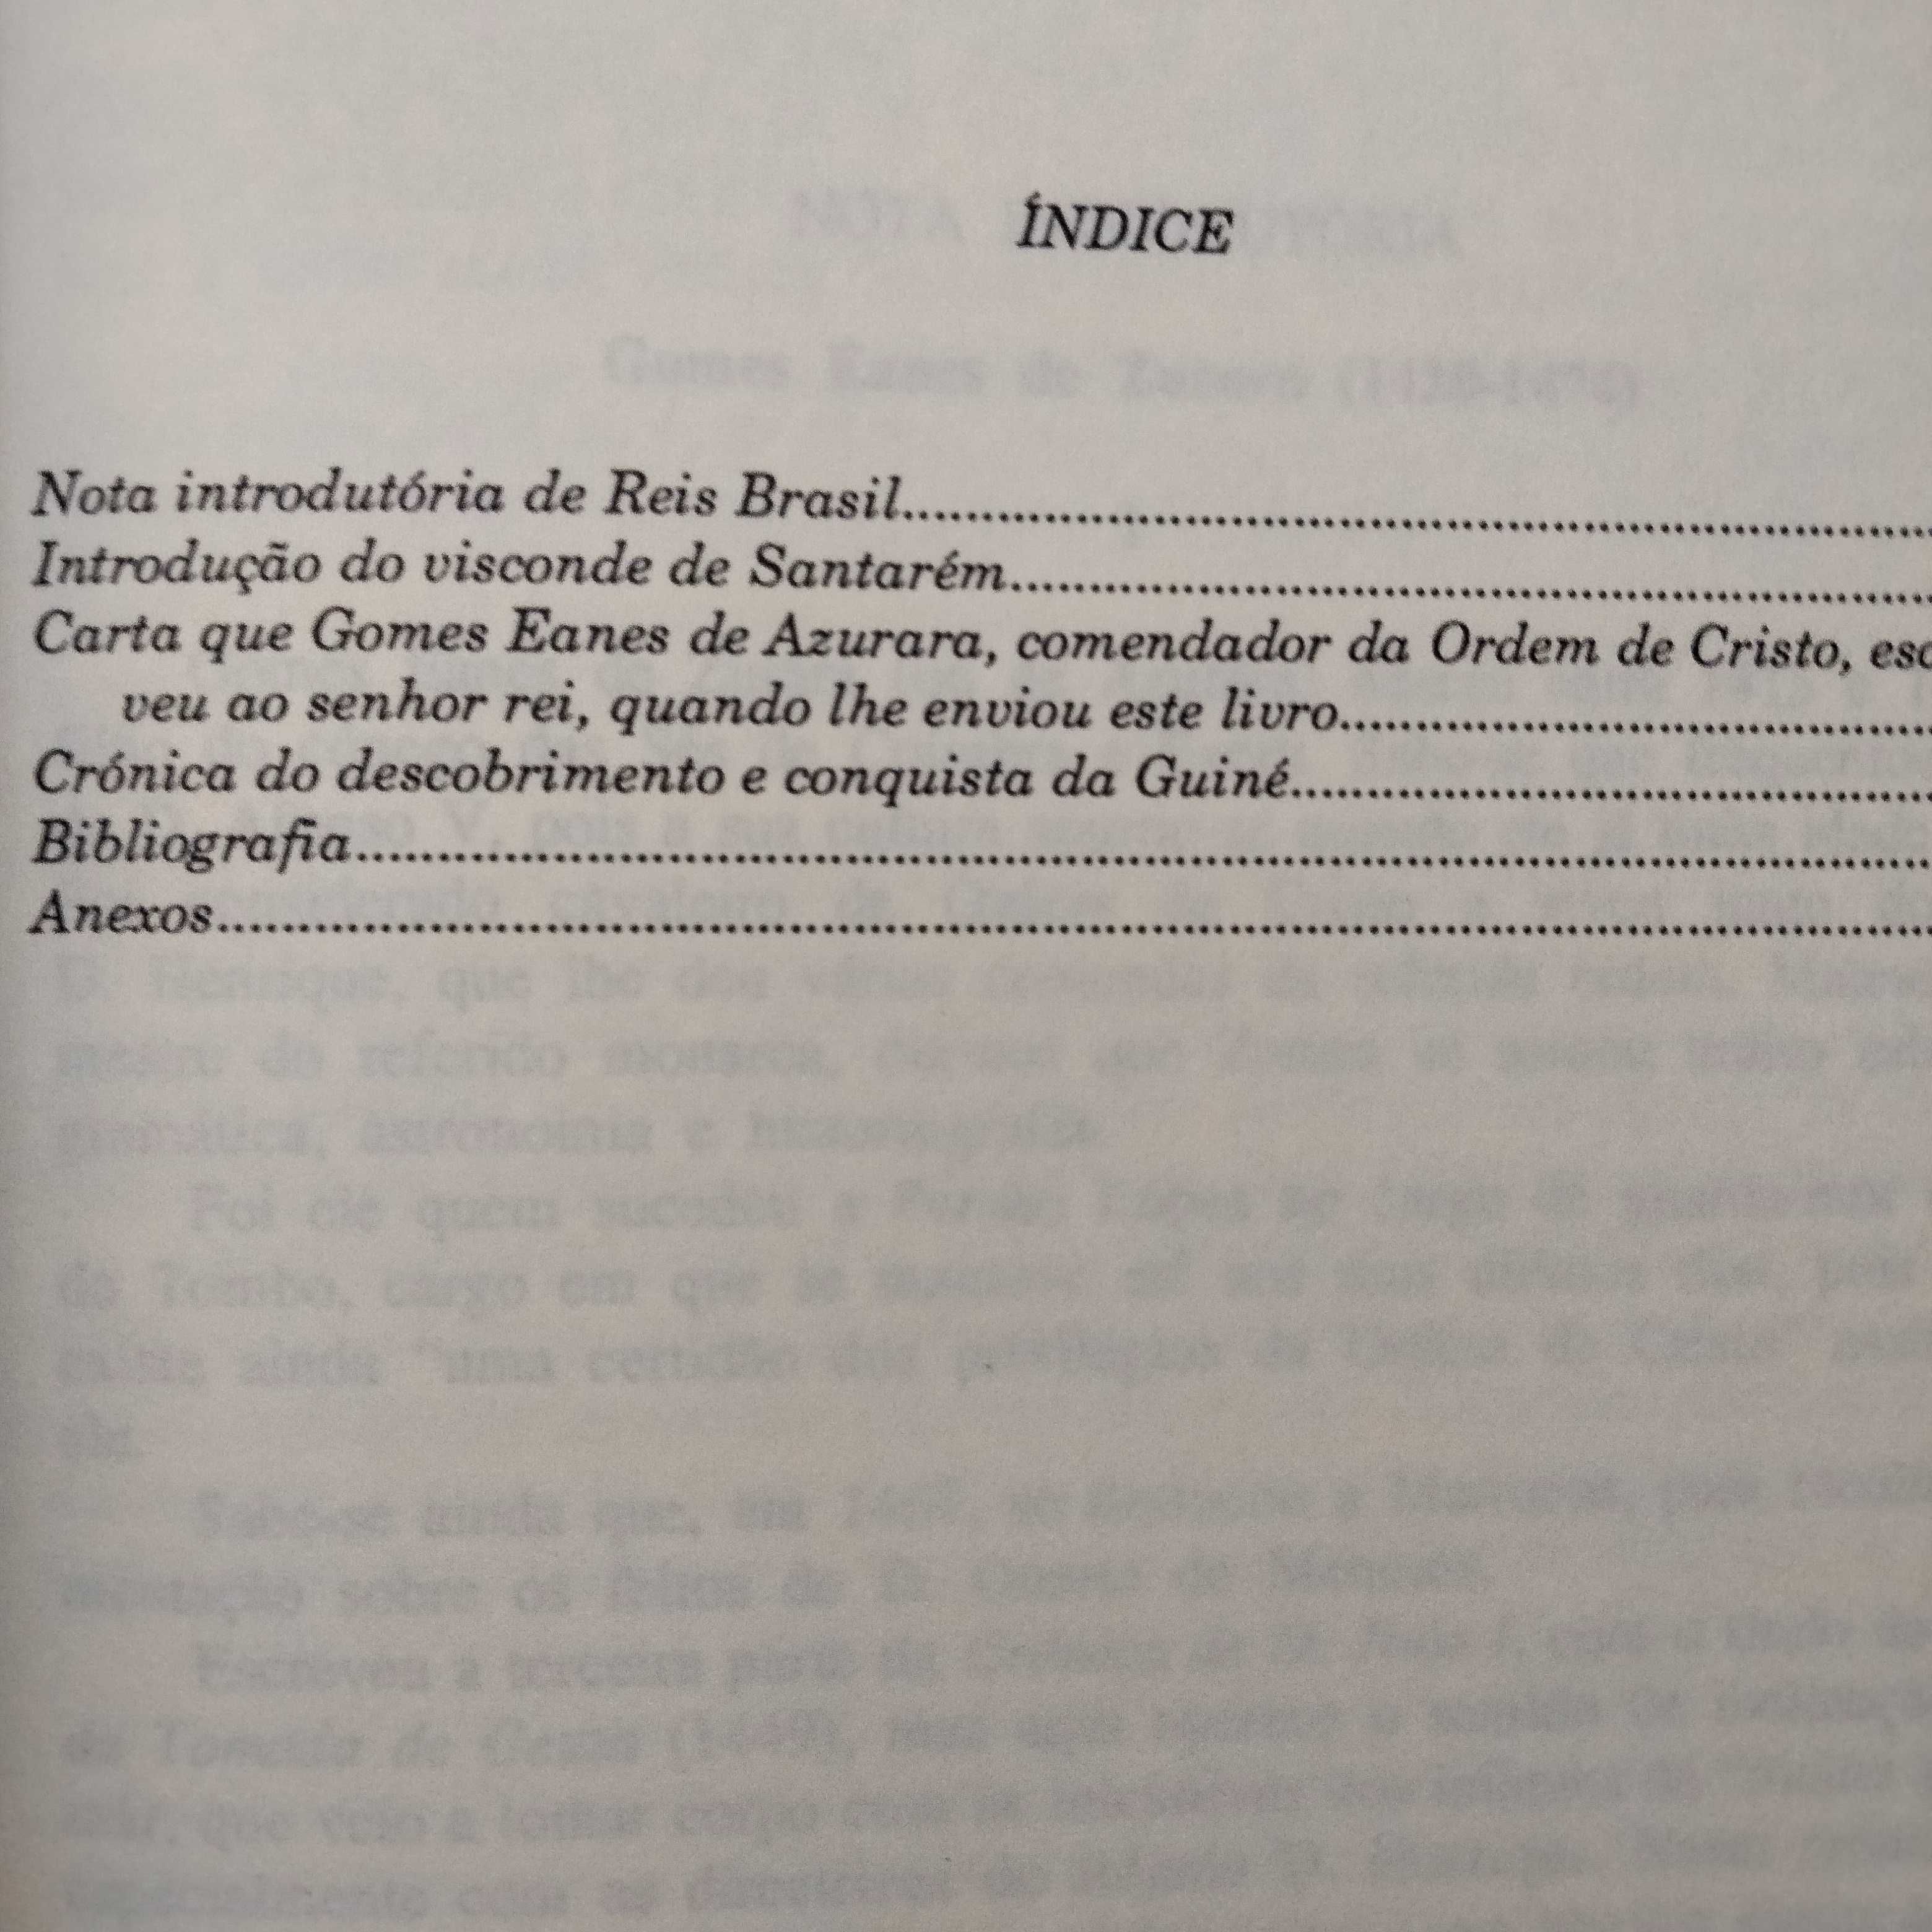 Crónica do Descobrimento e Conquista da Guiné - Gomes Eanes de Azurara